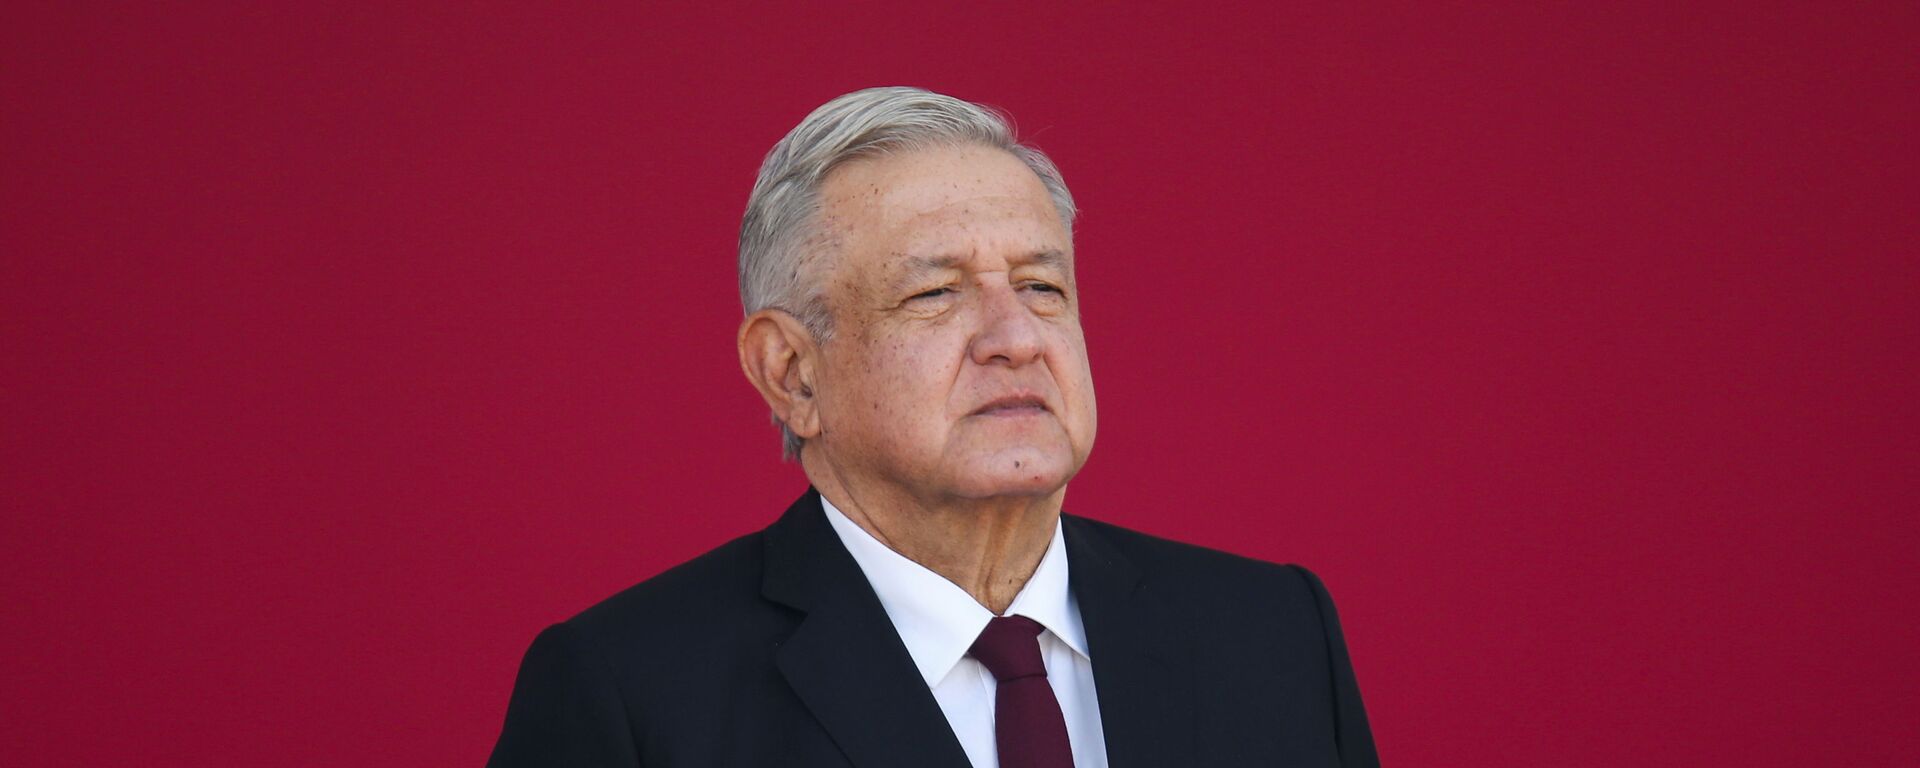 Andrés Manuel López Obrador, presidente de México - Sputnik Mundo, 1920, 10.02.2021